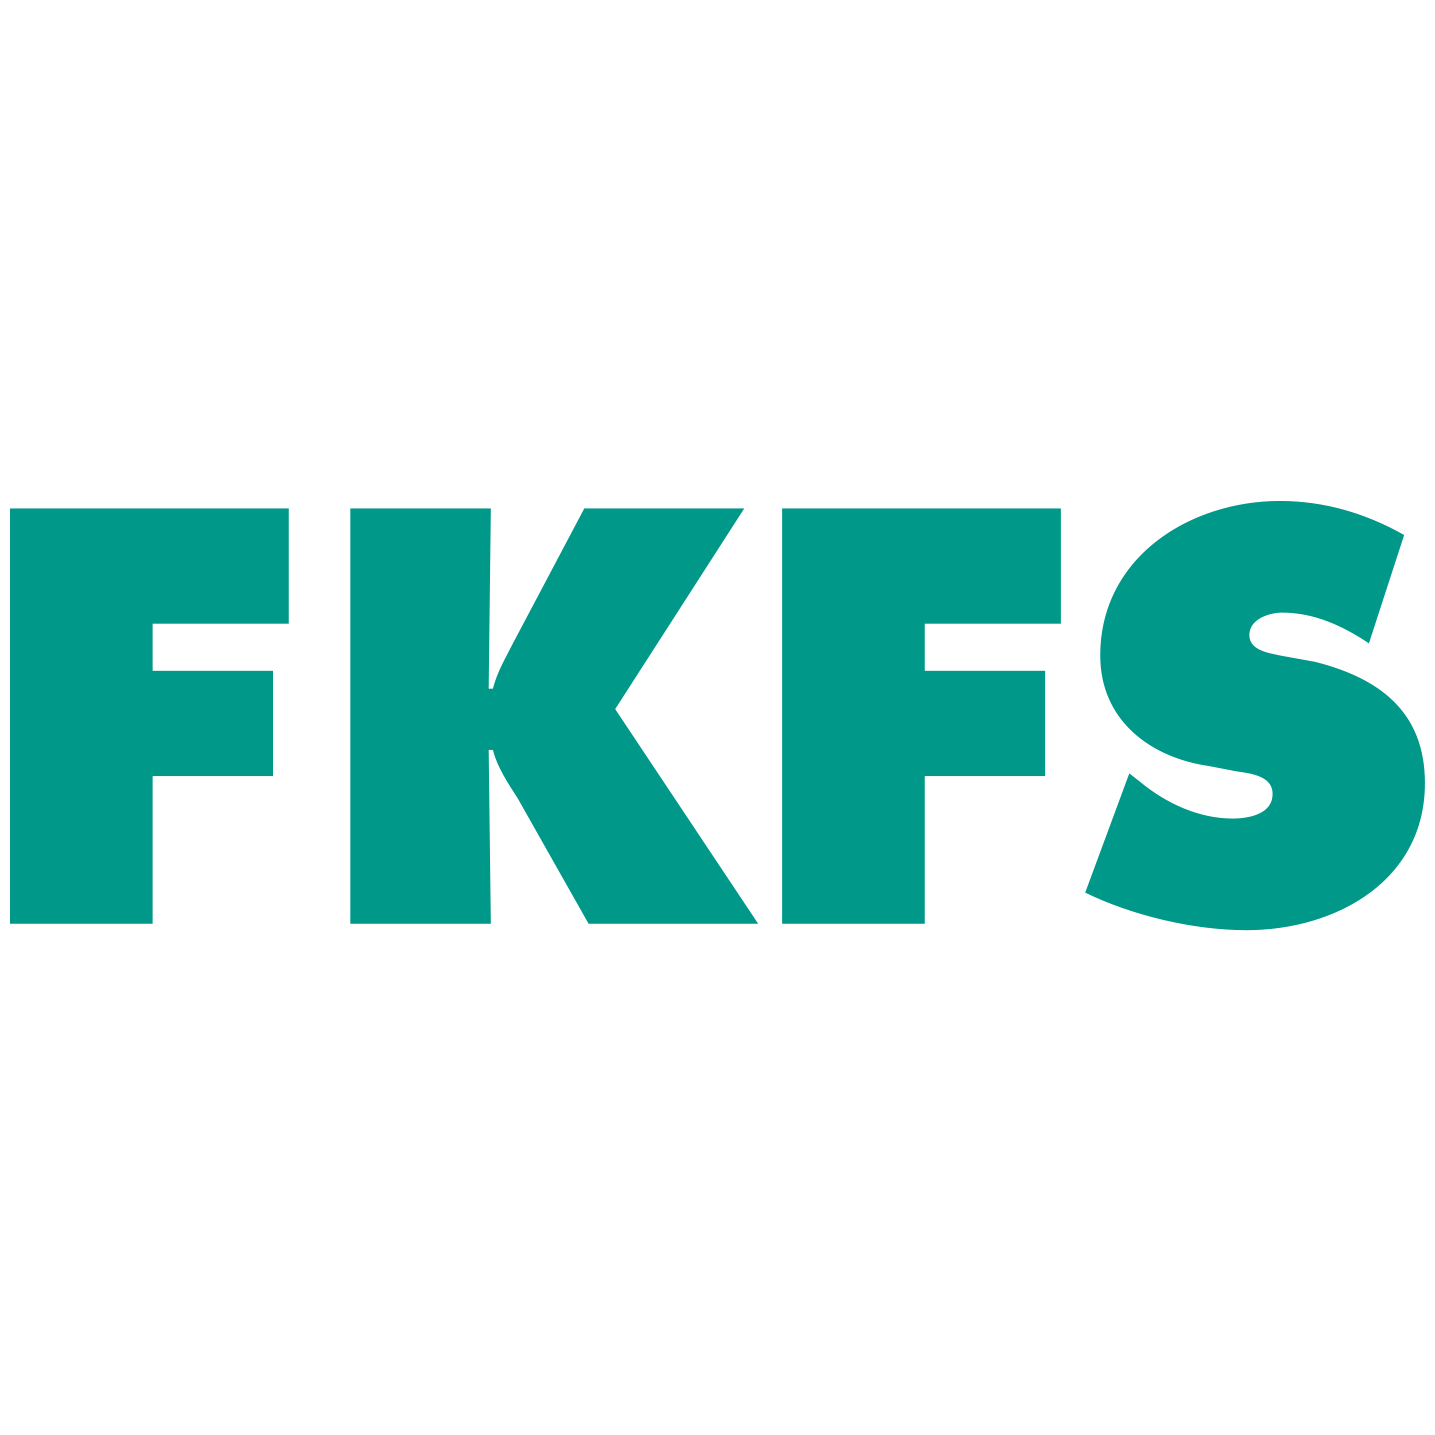 www.fkfs.de